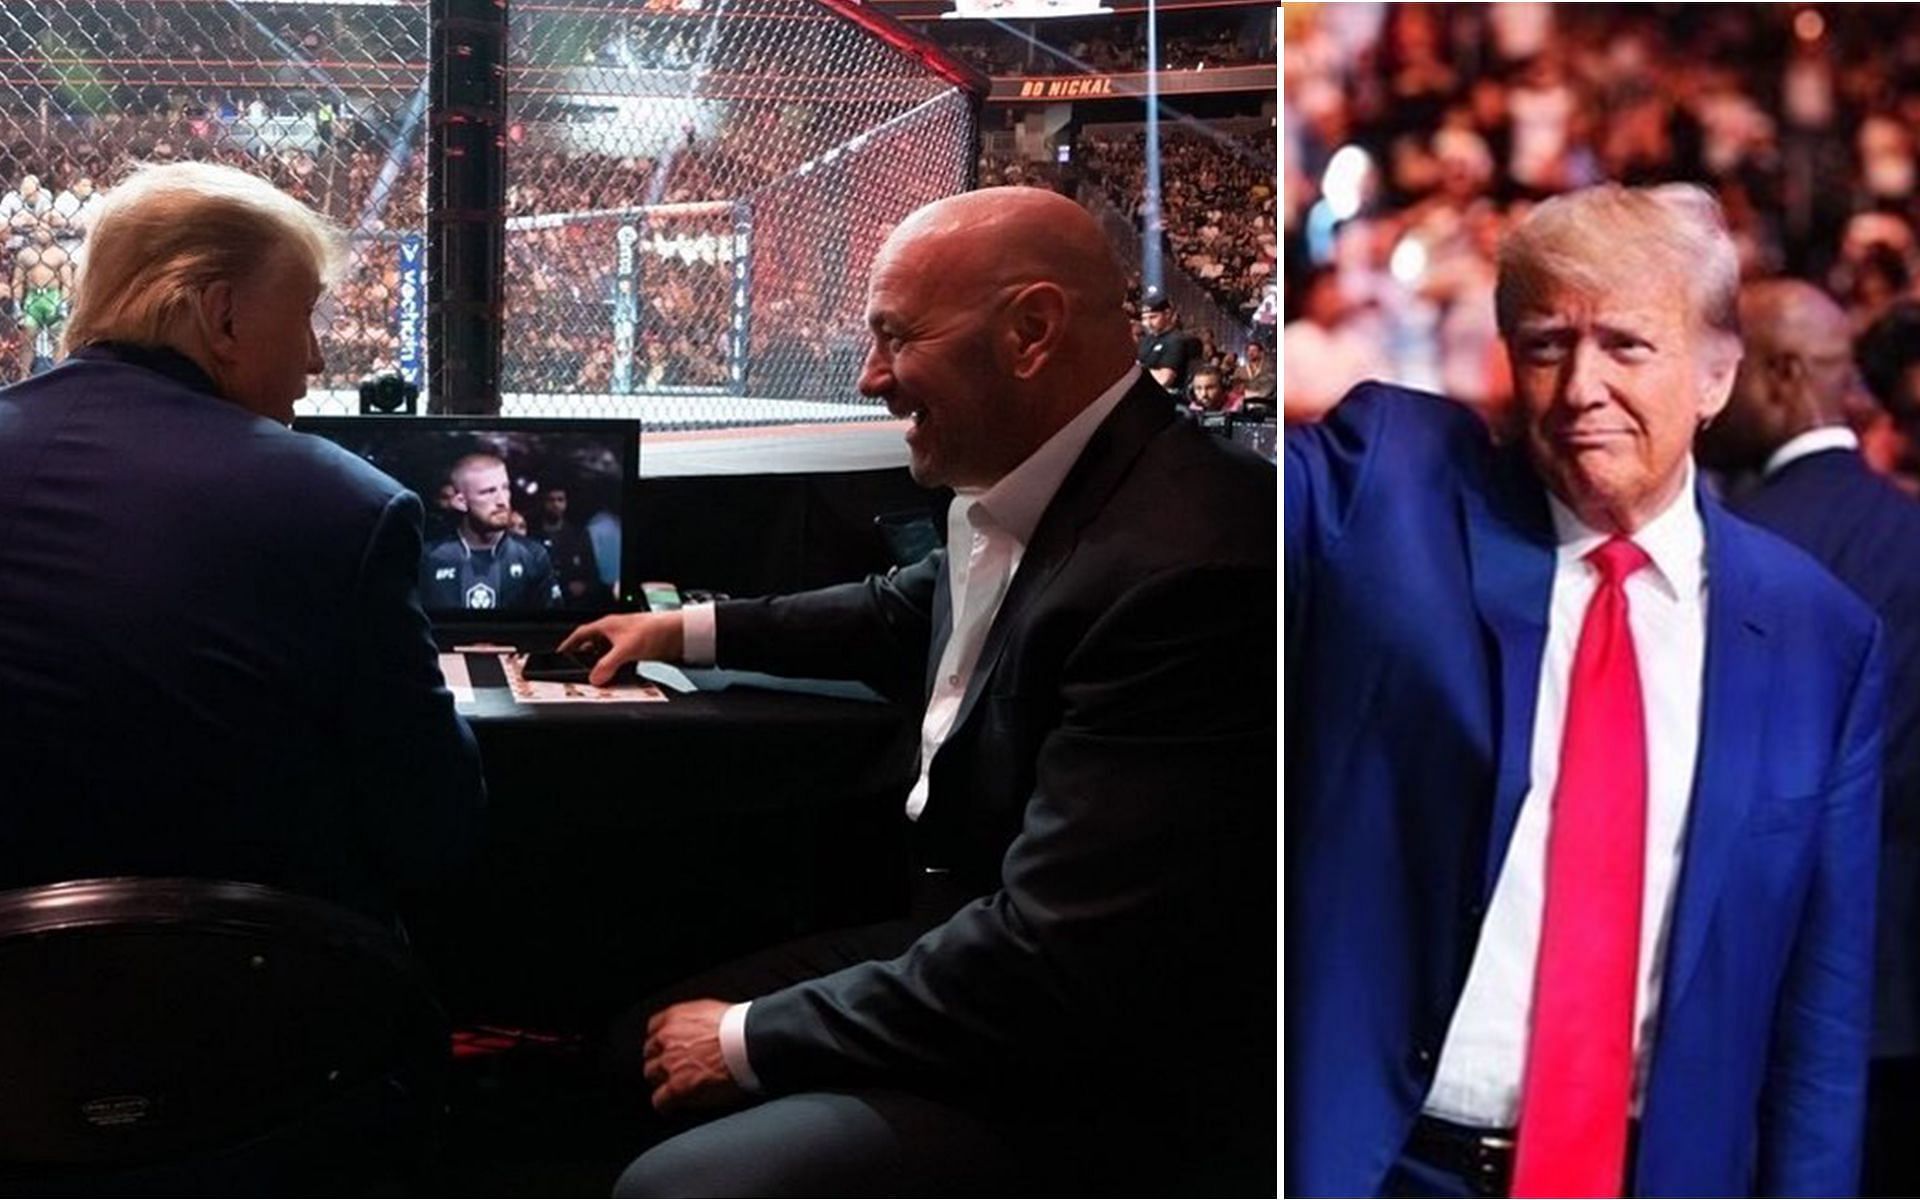 Donald Trump with Dana White at a UFC event [Images via @realdonaldtrump Instagram]